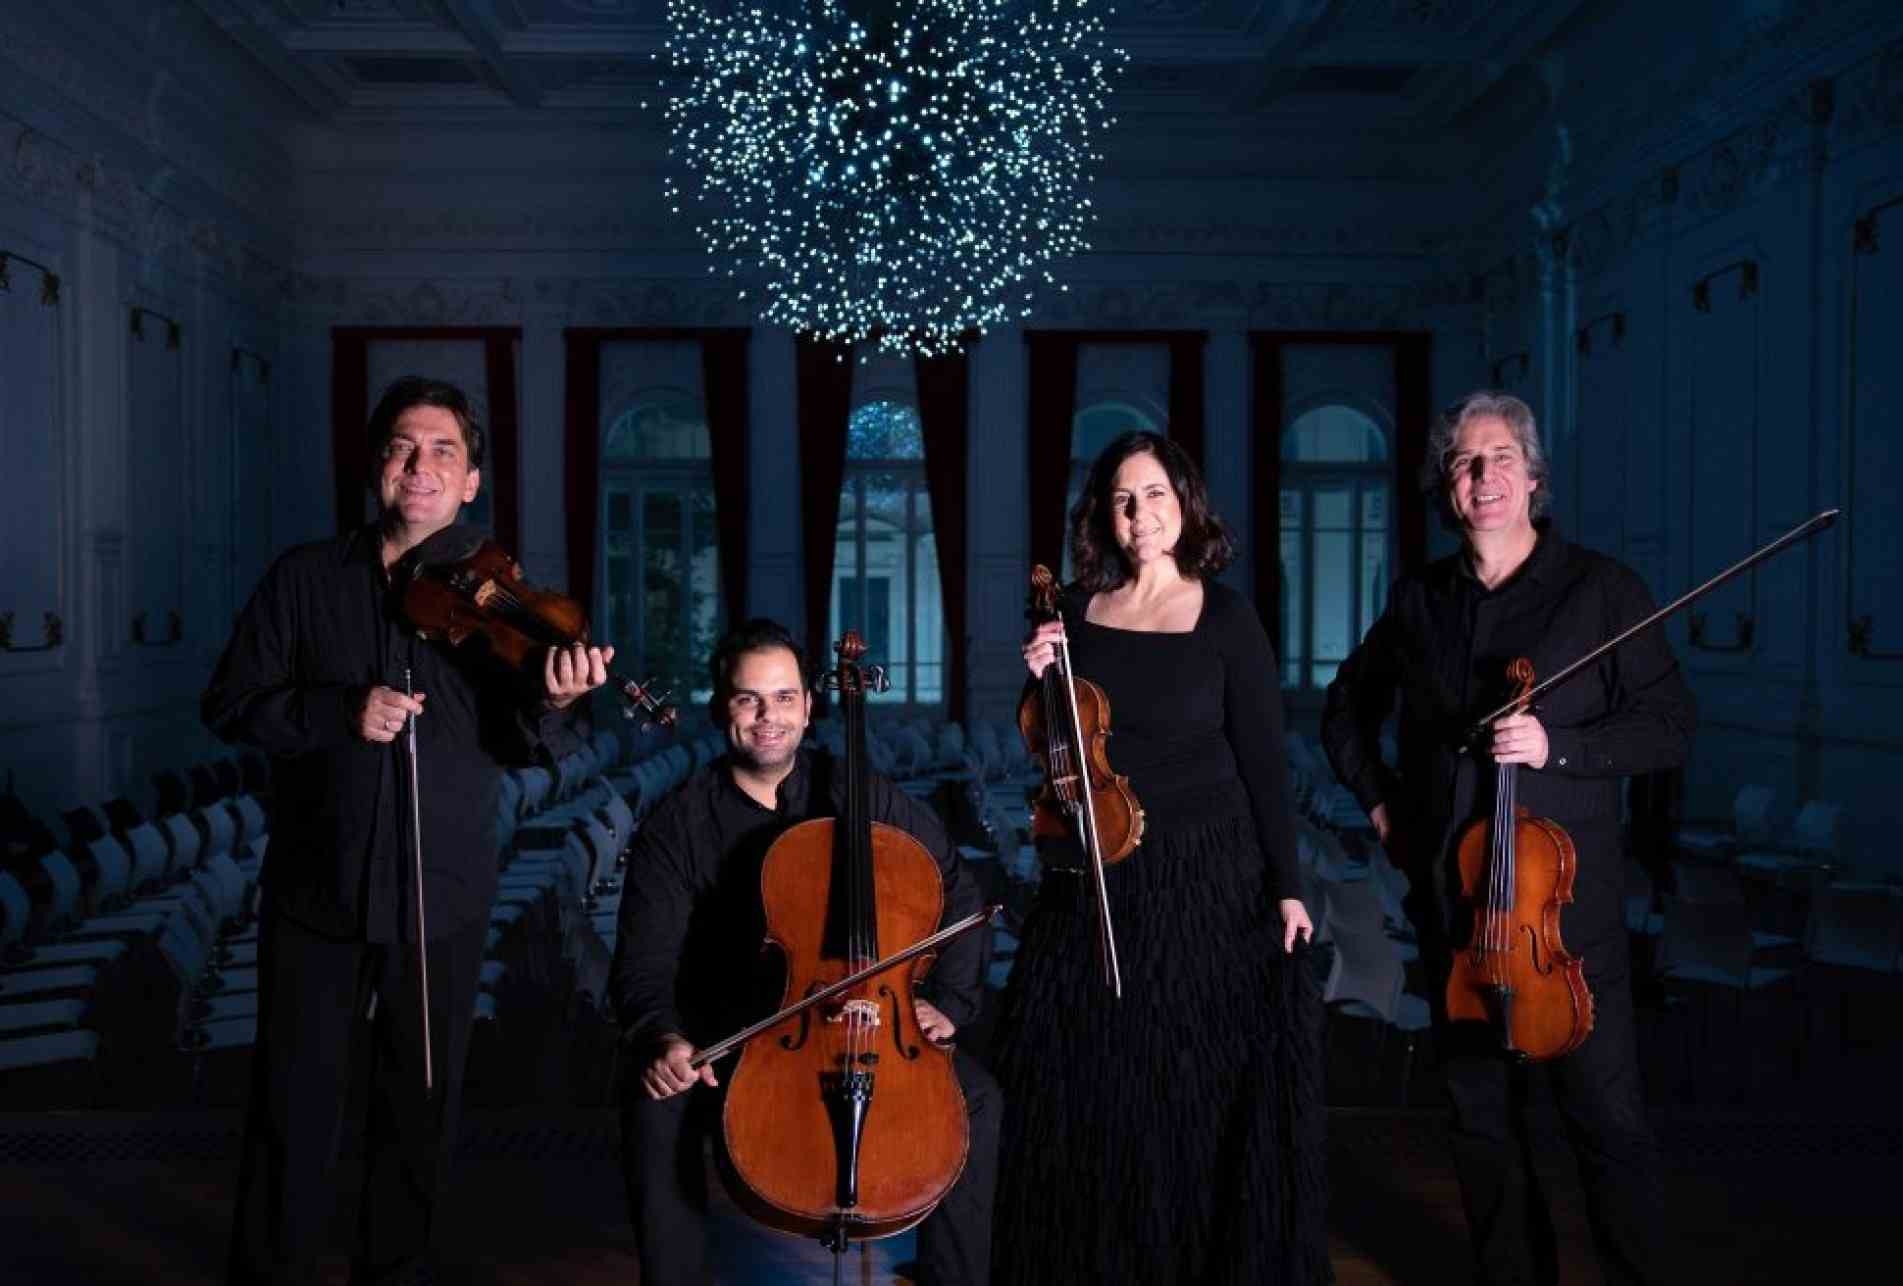 Concerto do Quarteto de Cordas da Cidade de São Paulo começará às 19h